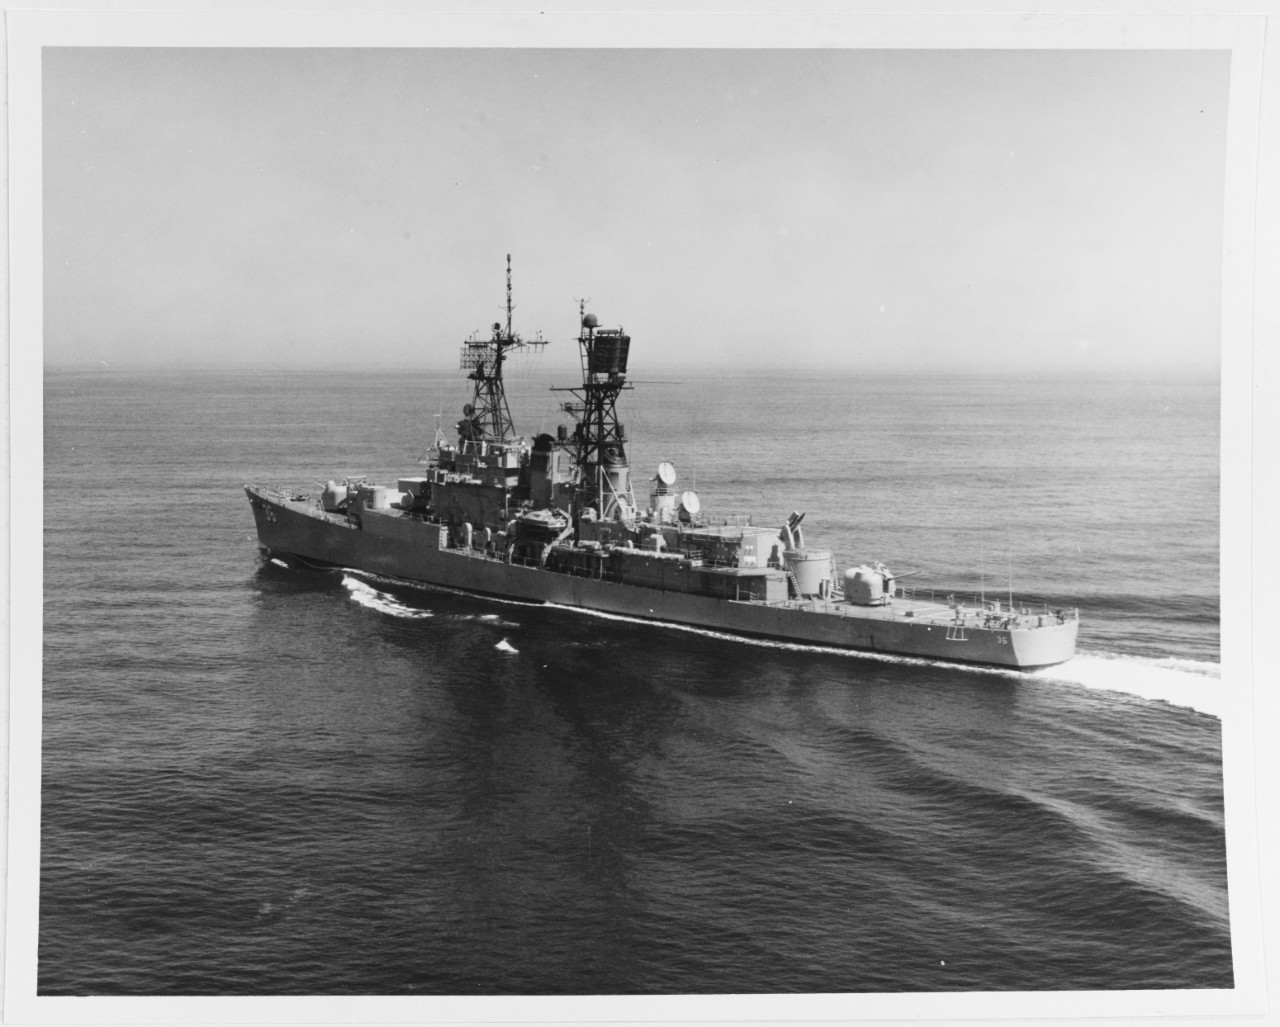 USS JOHN S. McCAIN (DDG-36)